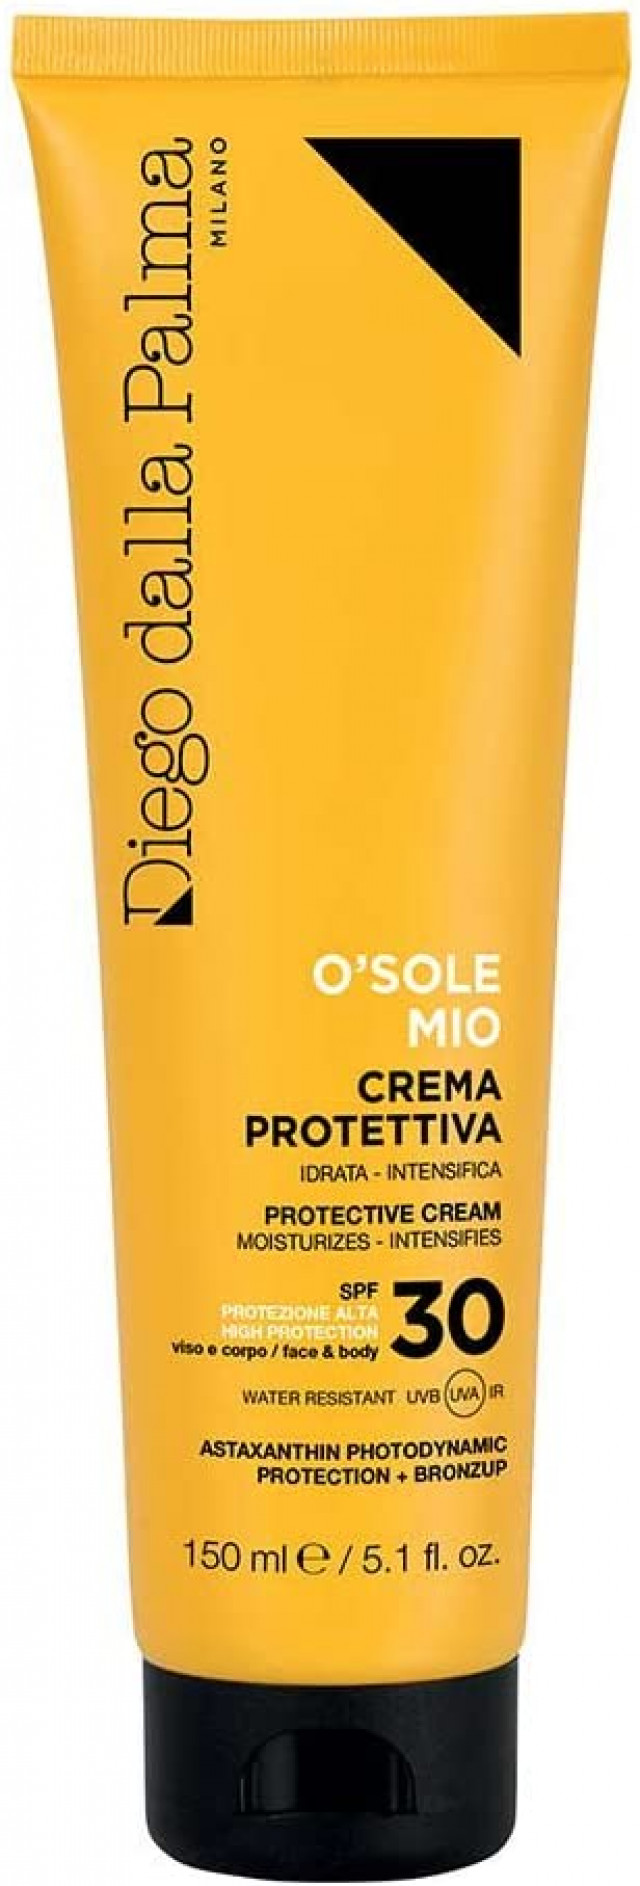 O'sole mio - crema protettiva viso corpo spf 30